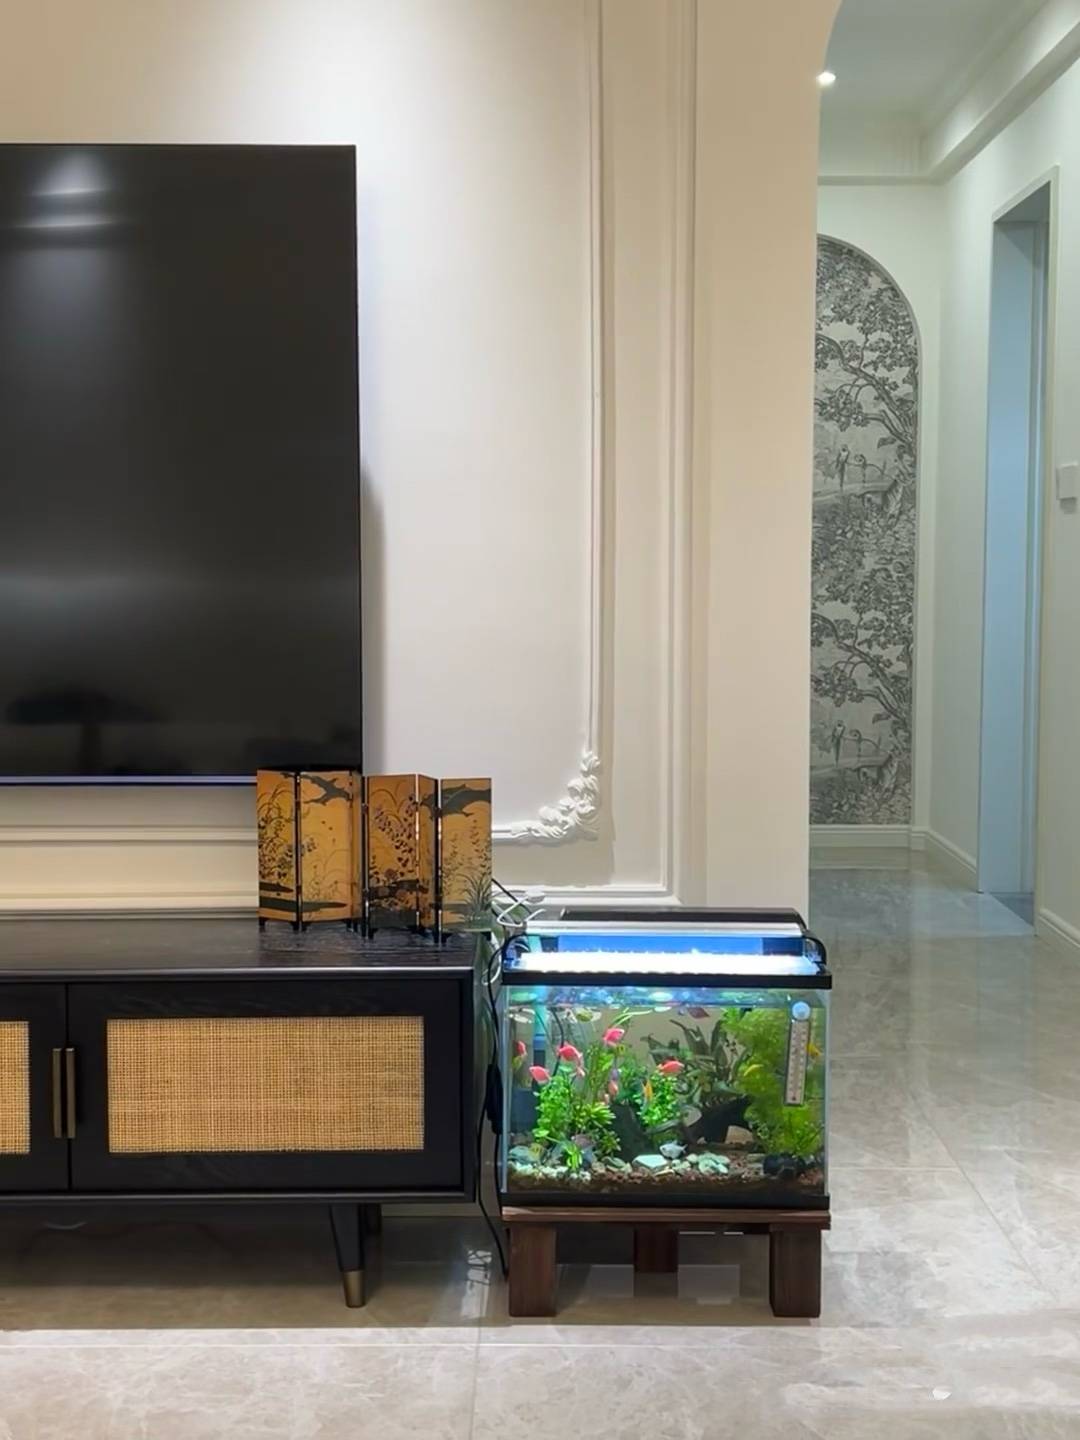 一般来说,鱼缸最好摆放在家中的财位,如客厅的对角线位置,有助于聚集